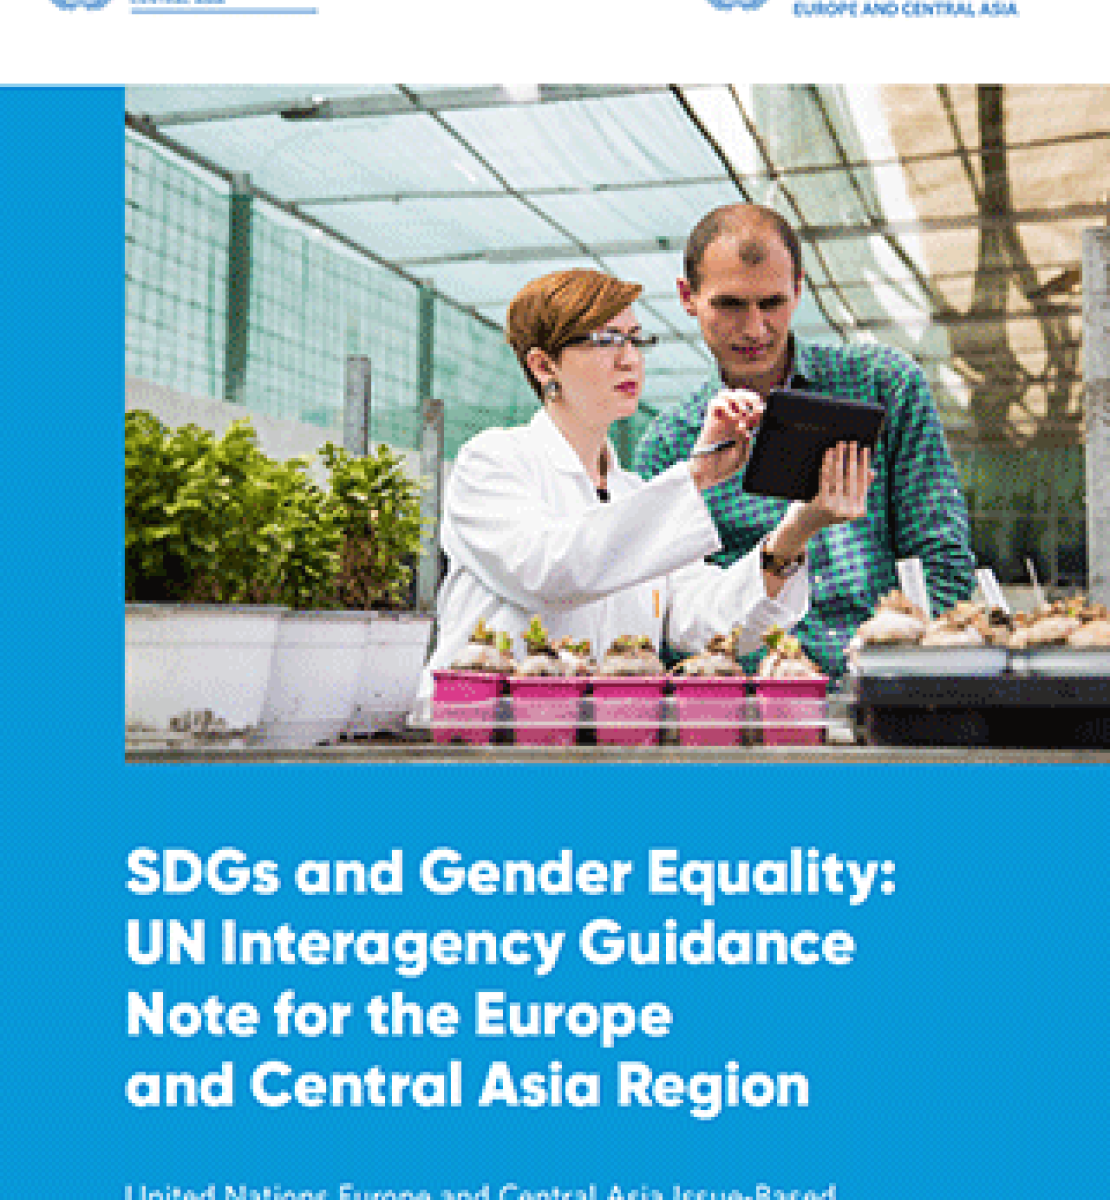 ЦУР и гендерное равенство: методическое руководство для агентств ООН в странах Европы и Центральной Азии